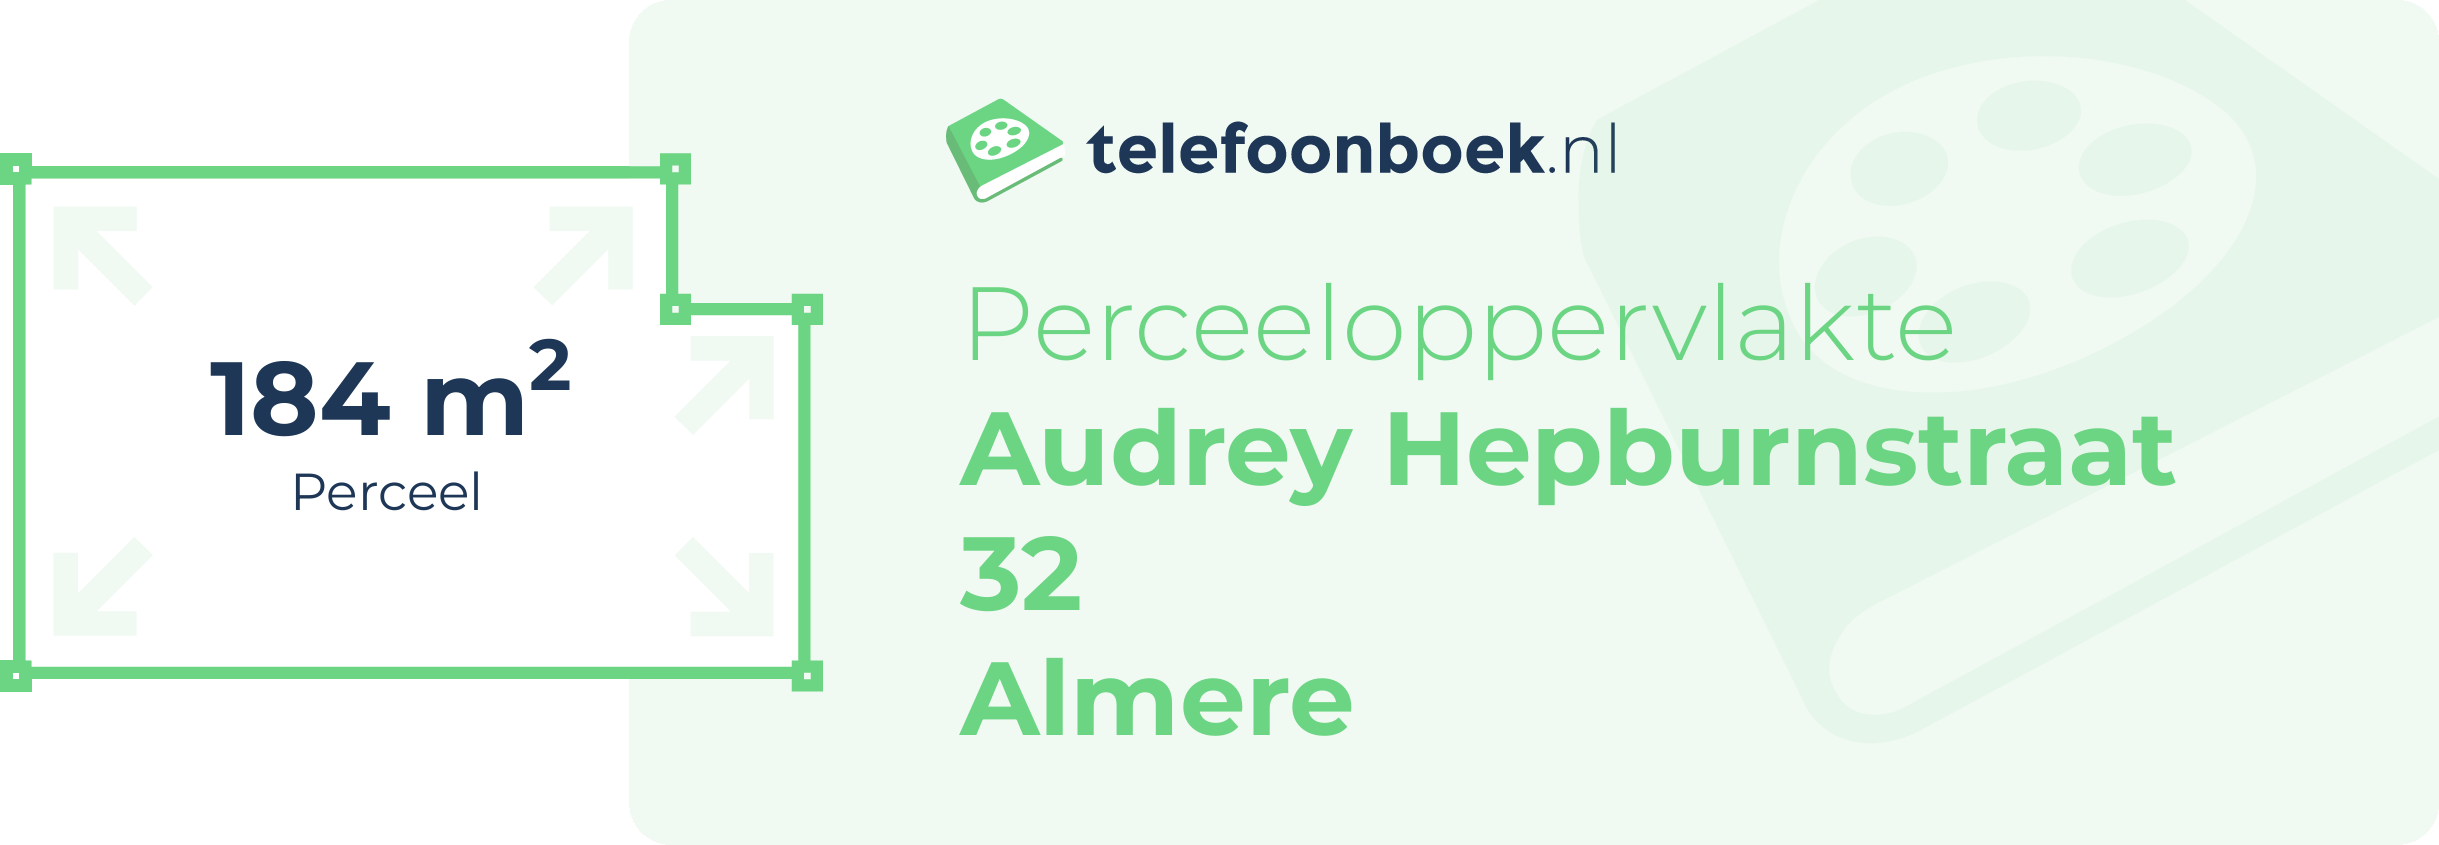 Perceeloppervlakte Audrey Hepburnstraat 32 Almere